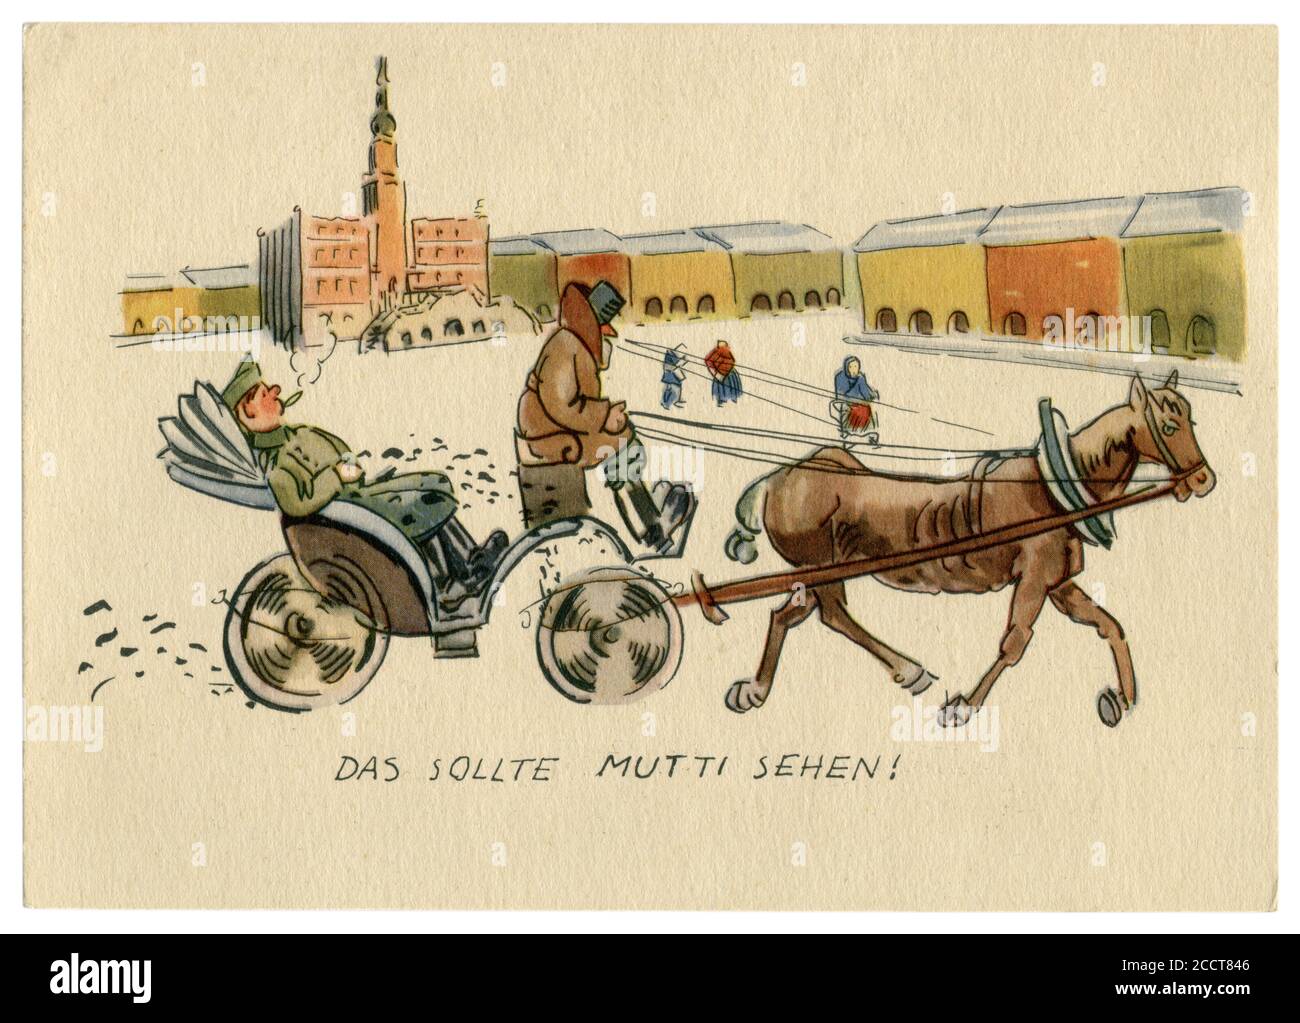 Carte postale historique allemande : c'est ce que maman devrait voir. Ville d'Europe de l'est occupée par les troupes nazies. Un cabman dans un taxi porte un soldat-envahisseur. Banque D'Images